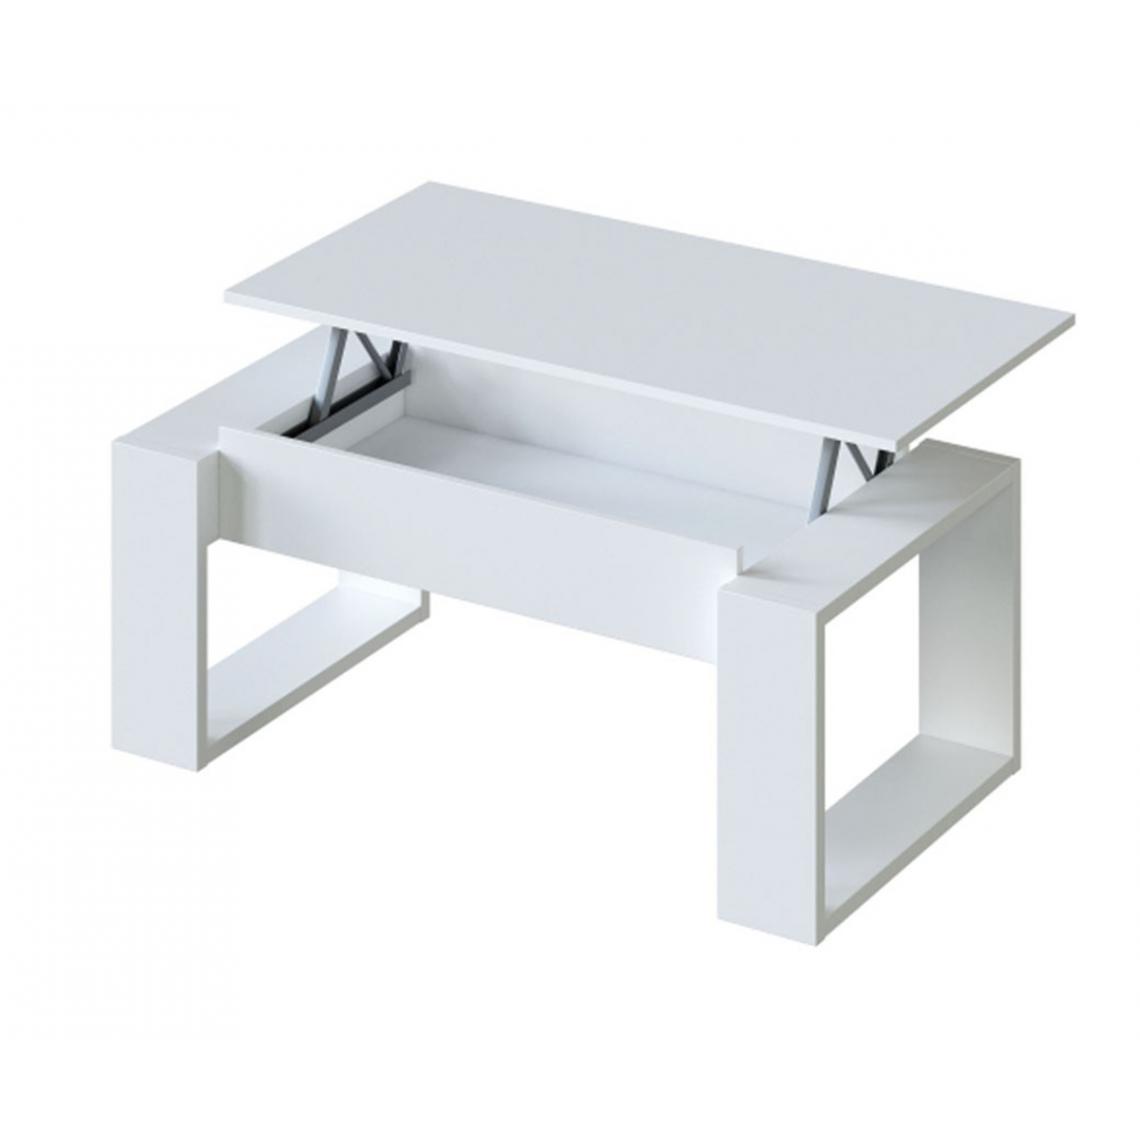 Pegane - Table Basse à plateau relevable coloris blanc artic - Longueur 102 x Profondeur 50 x Hauteur 43/54 cm - Tables basses